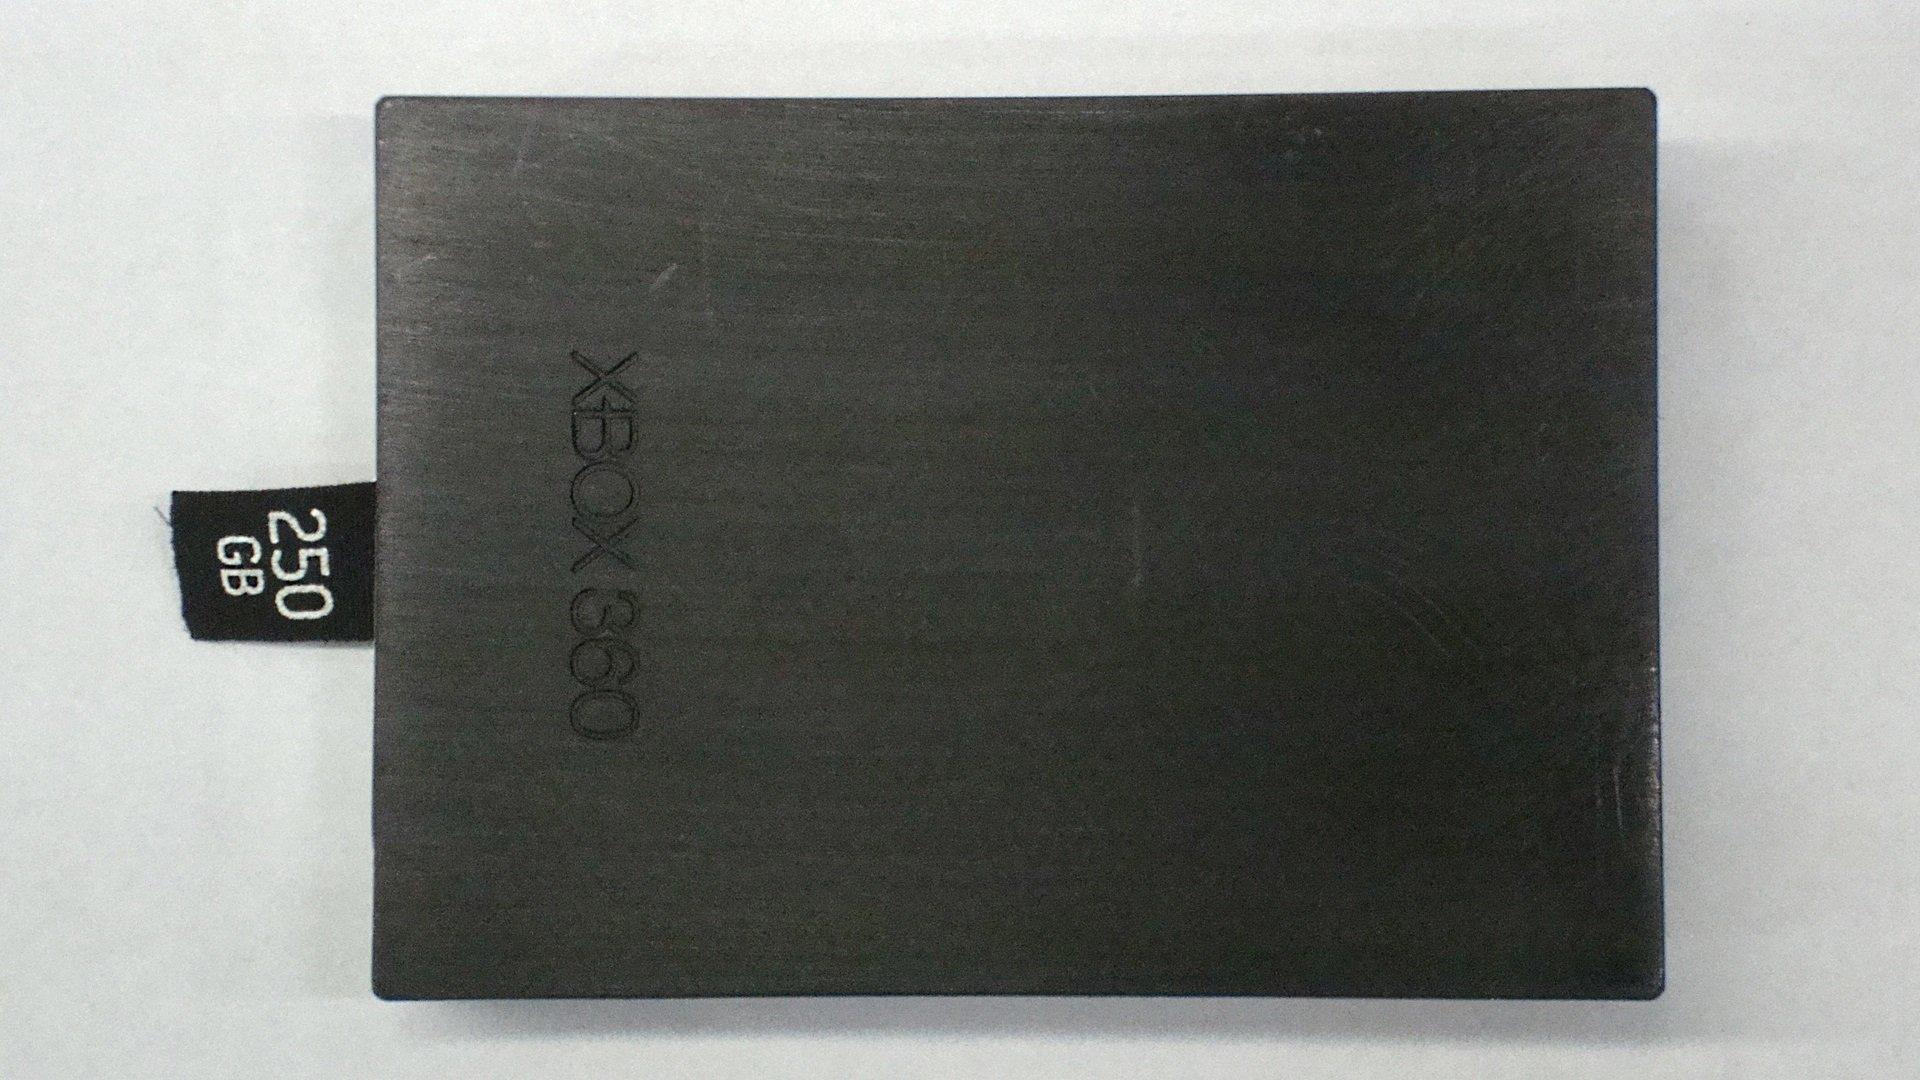 xbox 360 hdd 500gb